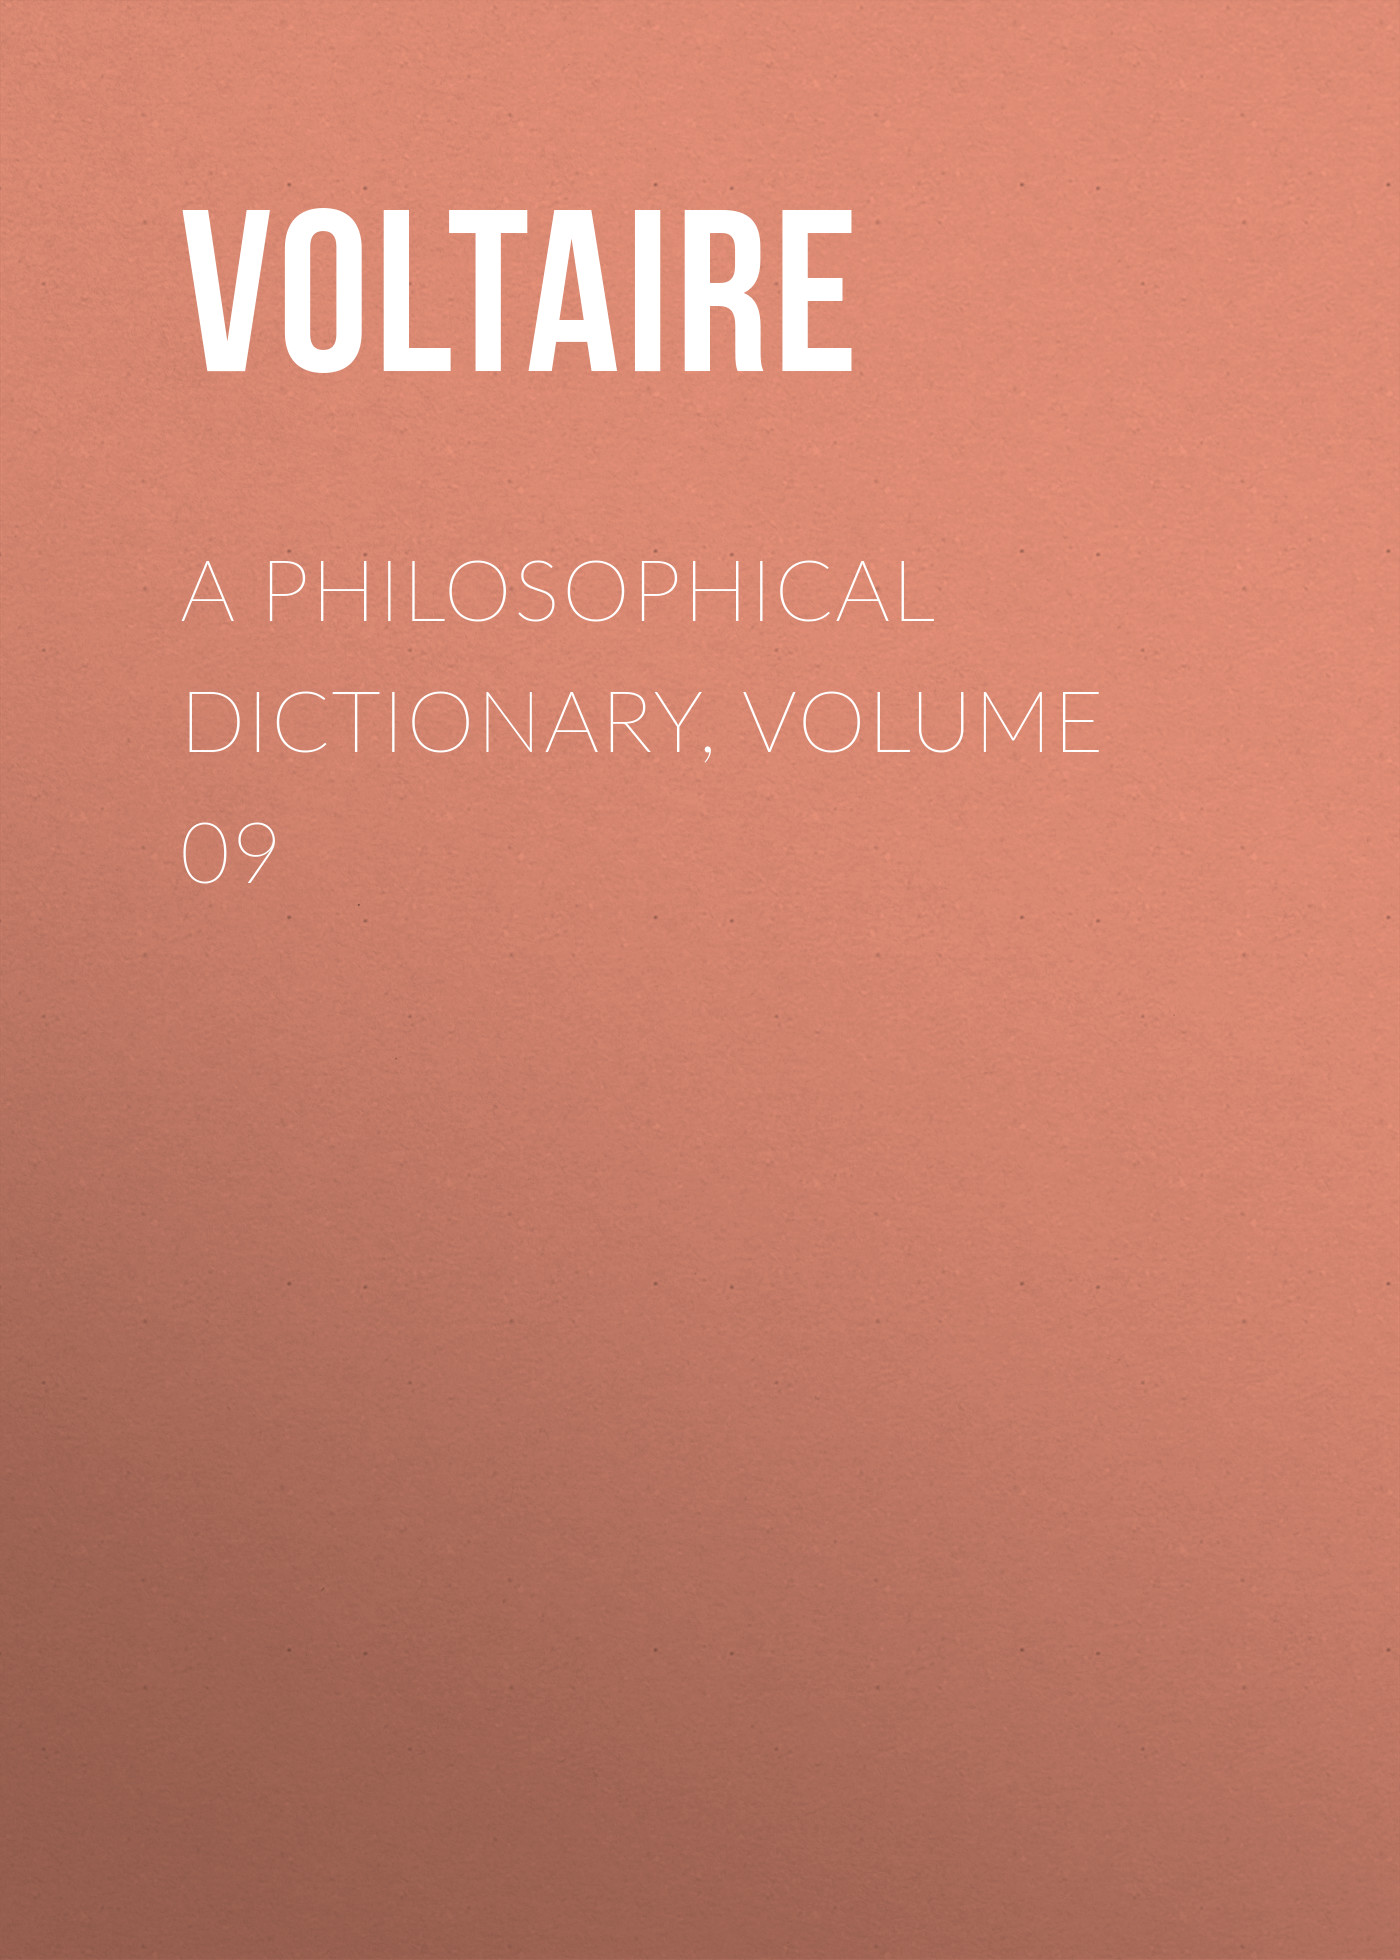 Книга A Philosophical Dictionary, Volume 09 из серии , созданная  Voltaire, может относится к жанру Философия, Литература 18 века, Зарубежная классика. Стоимость электронной книги A Philosophical Dictionary, Volume 09 с идентификатором 25560876 составляет 0 руб.